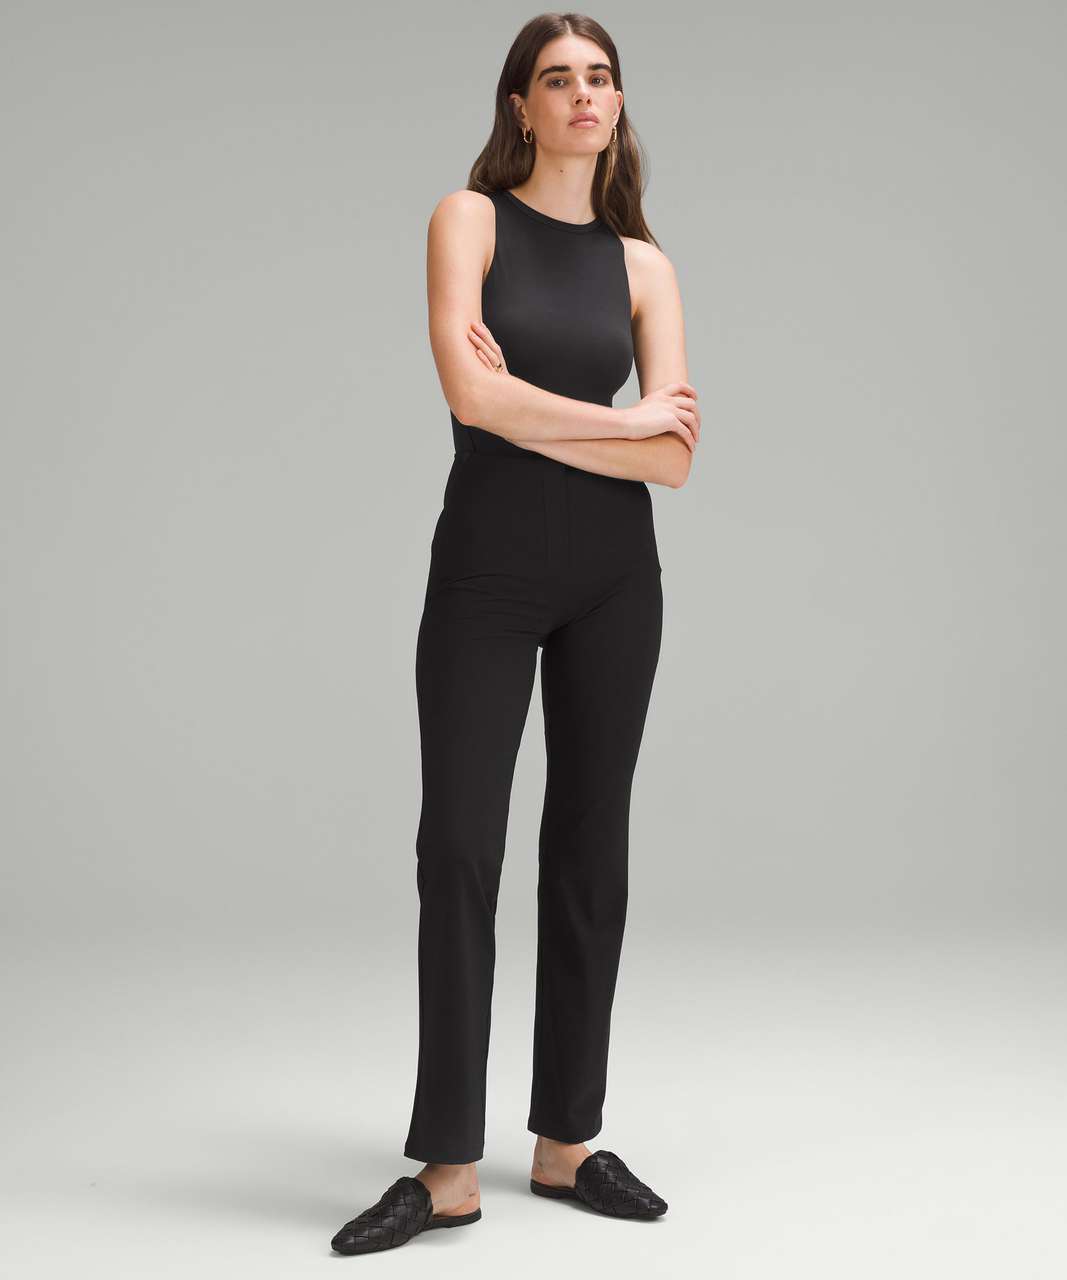 Lululemon The Easy Bodysuit NWT Sizes 2 4 6 8 MBEM Monochromic Black Dance  Thong